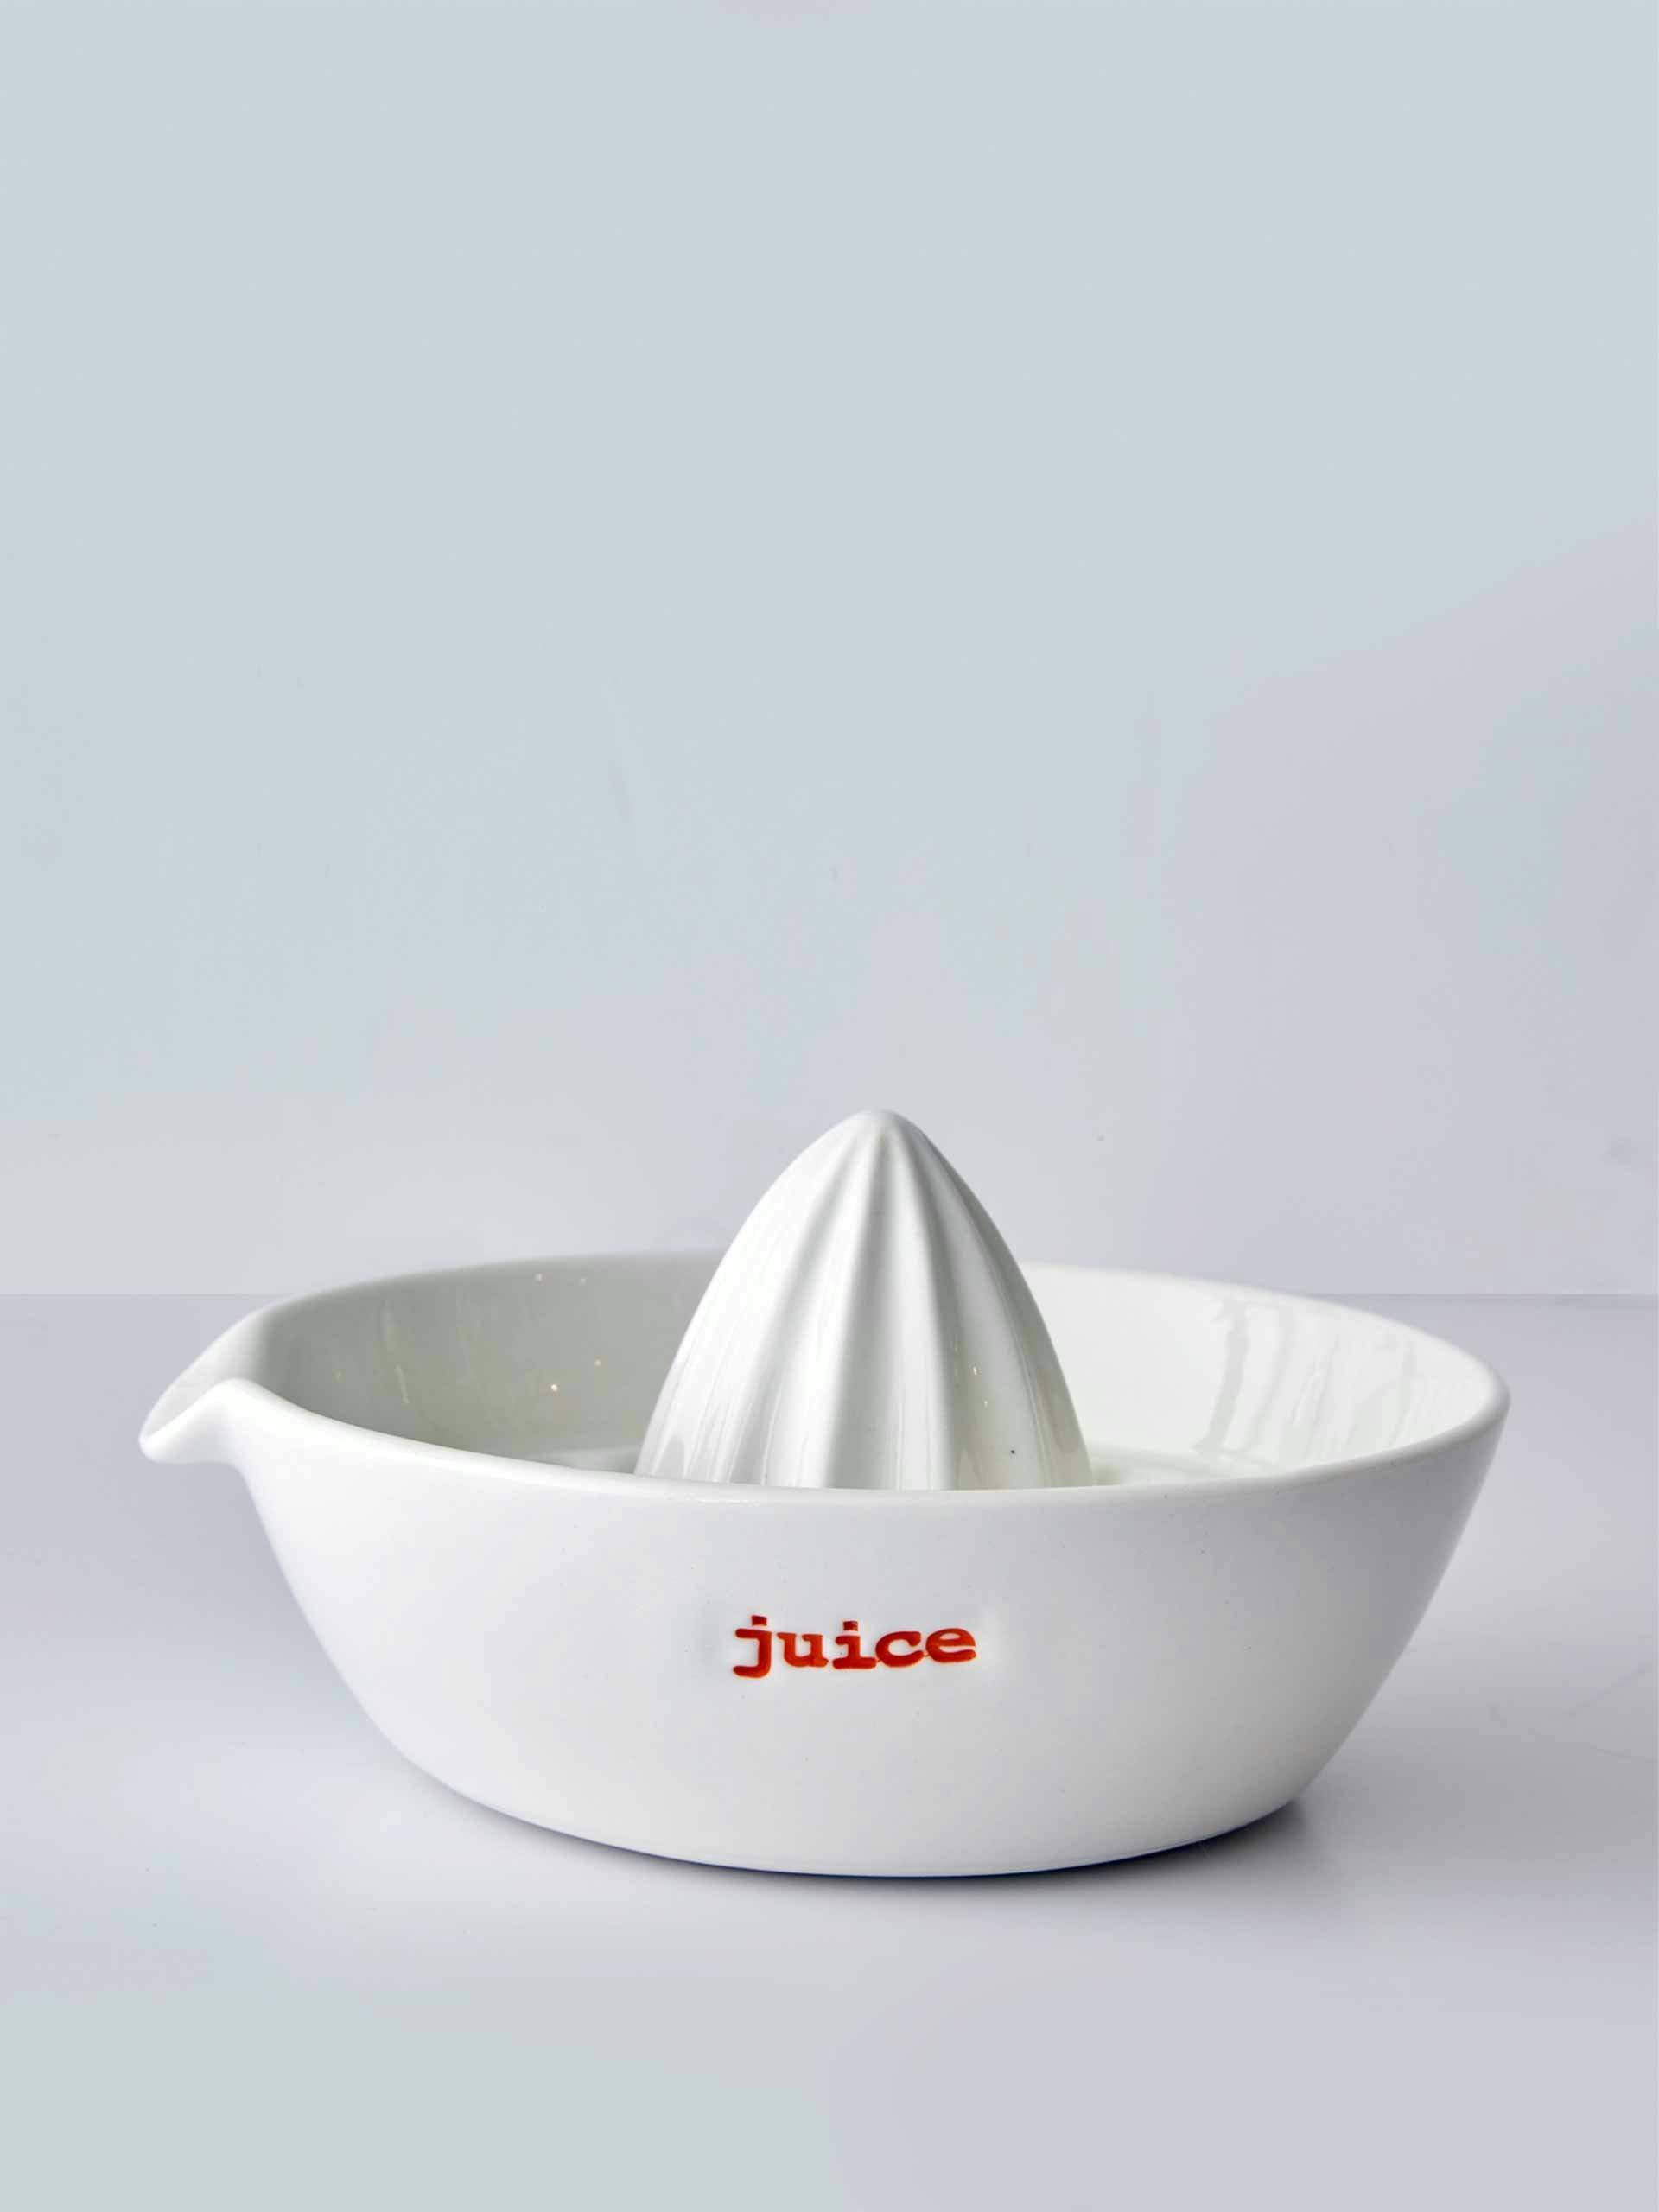 Ceramic juicer